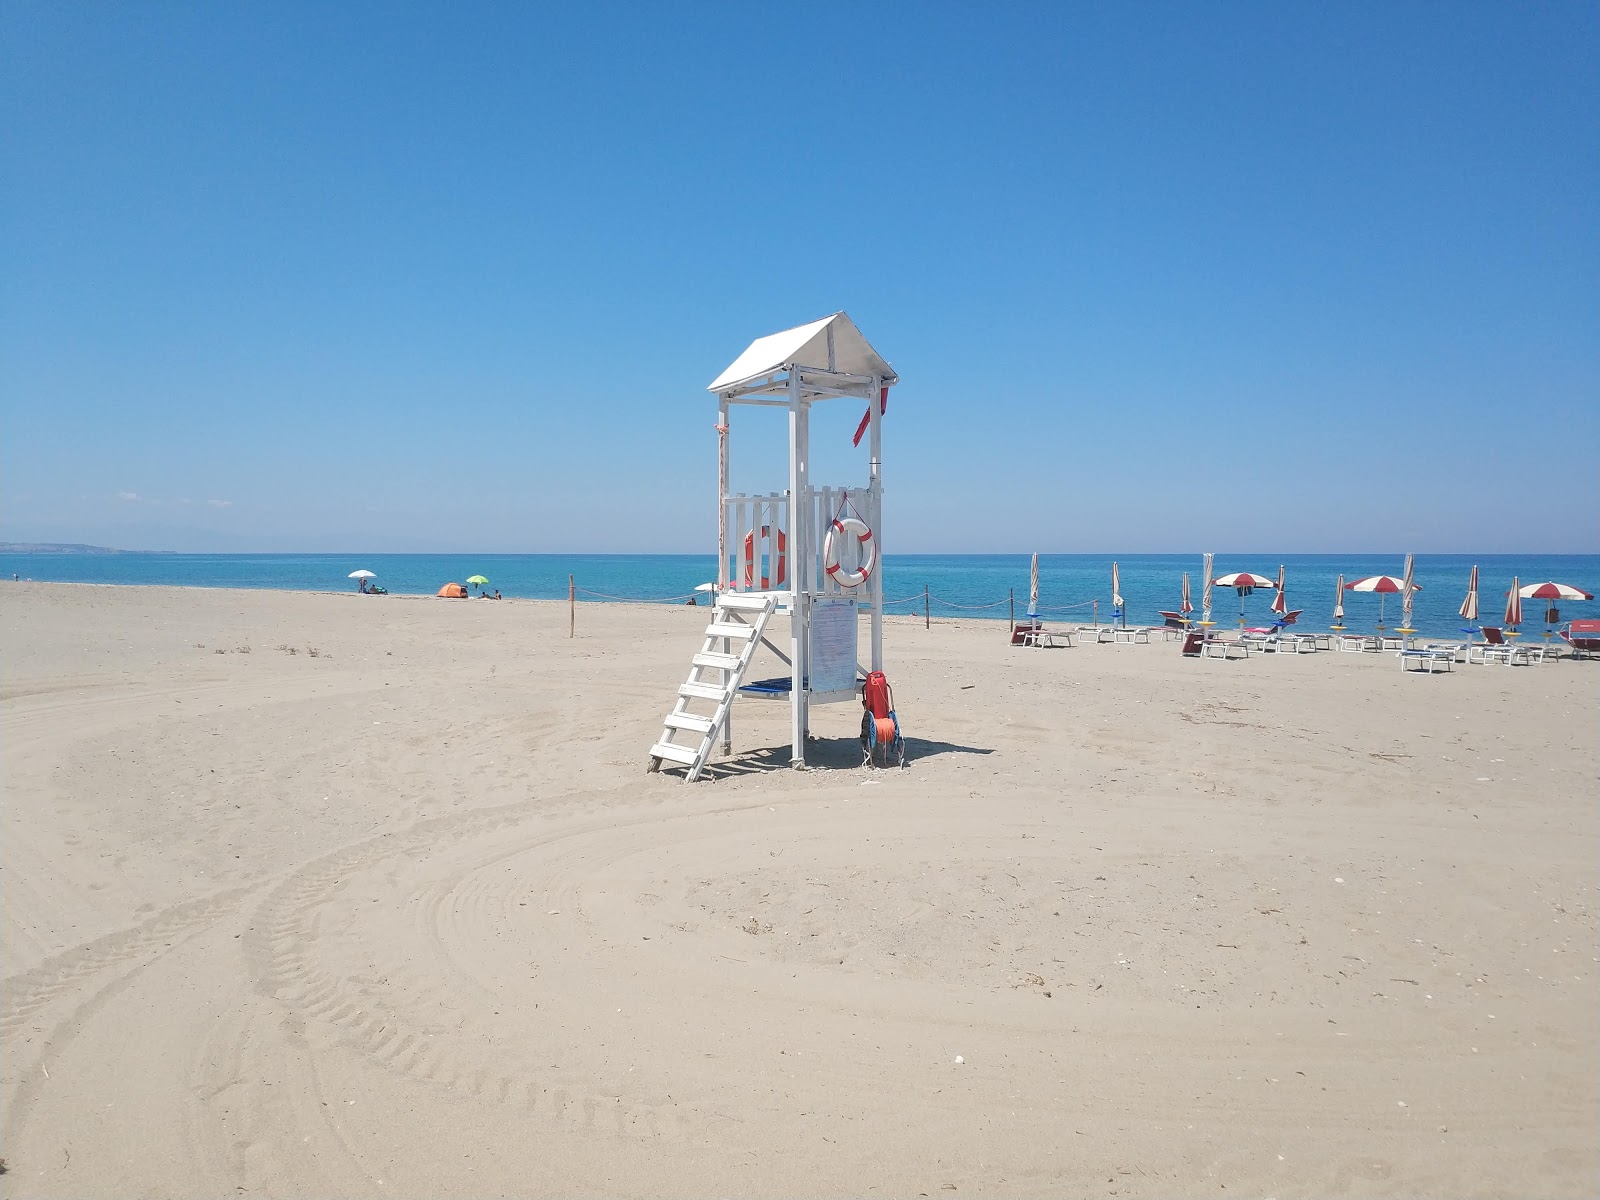 Mandatoriccio-Campana beach'in fotoğrafı - rahatlamayı sevenler arasında popüler bir yer